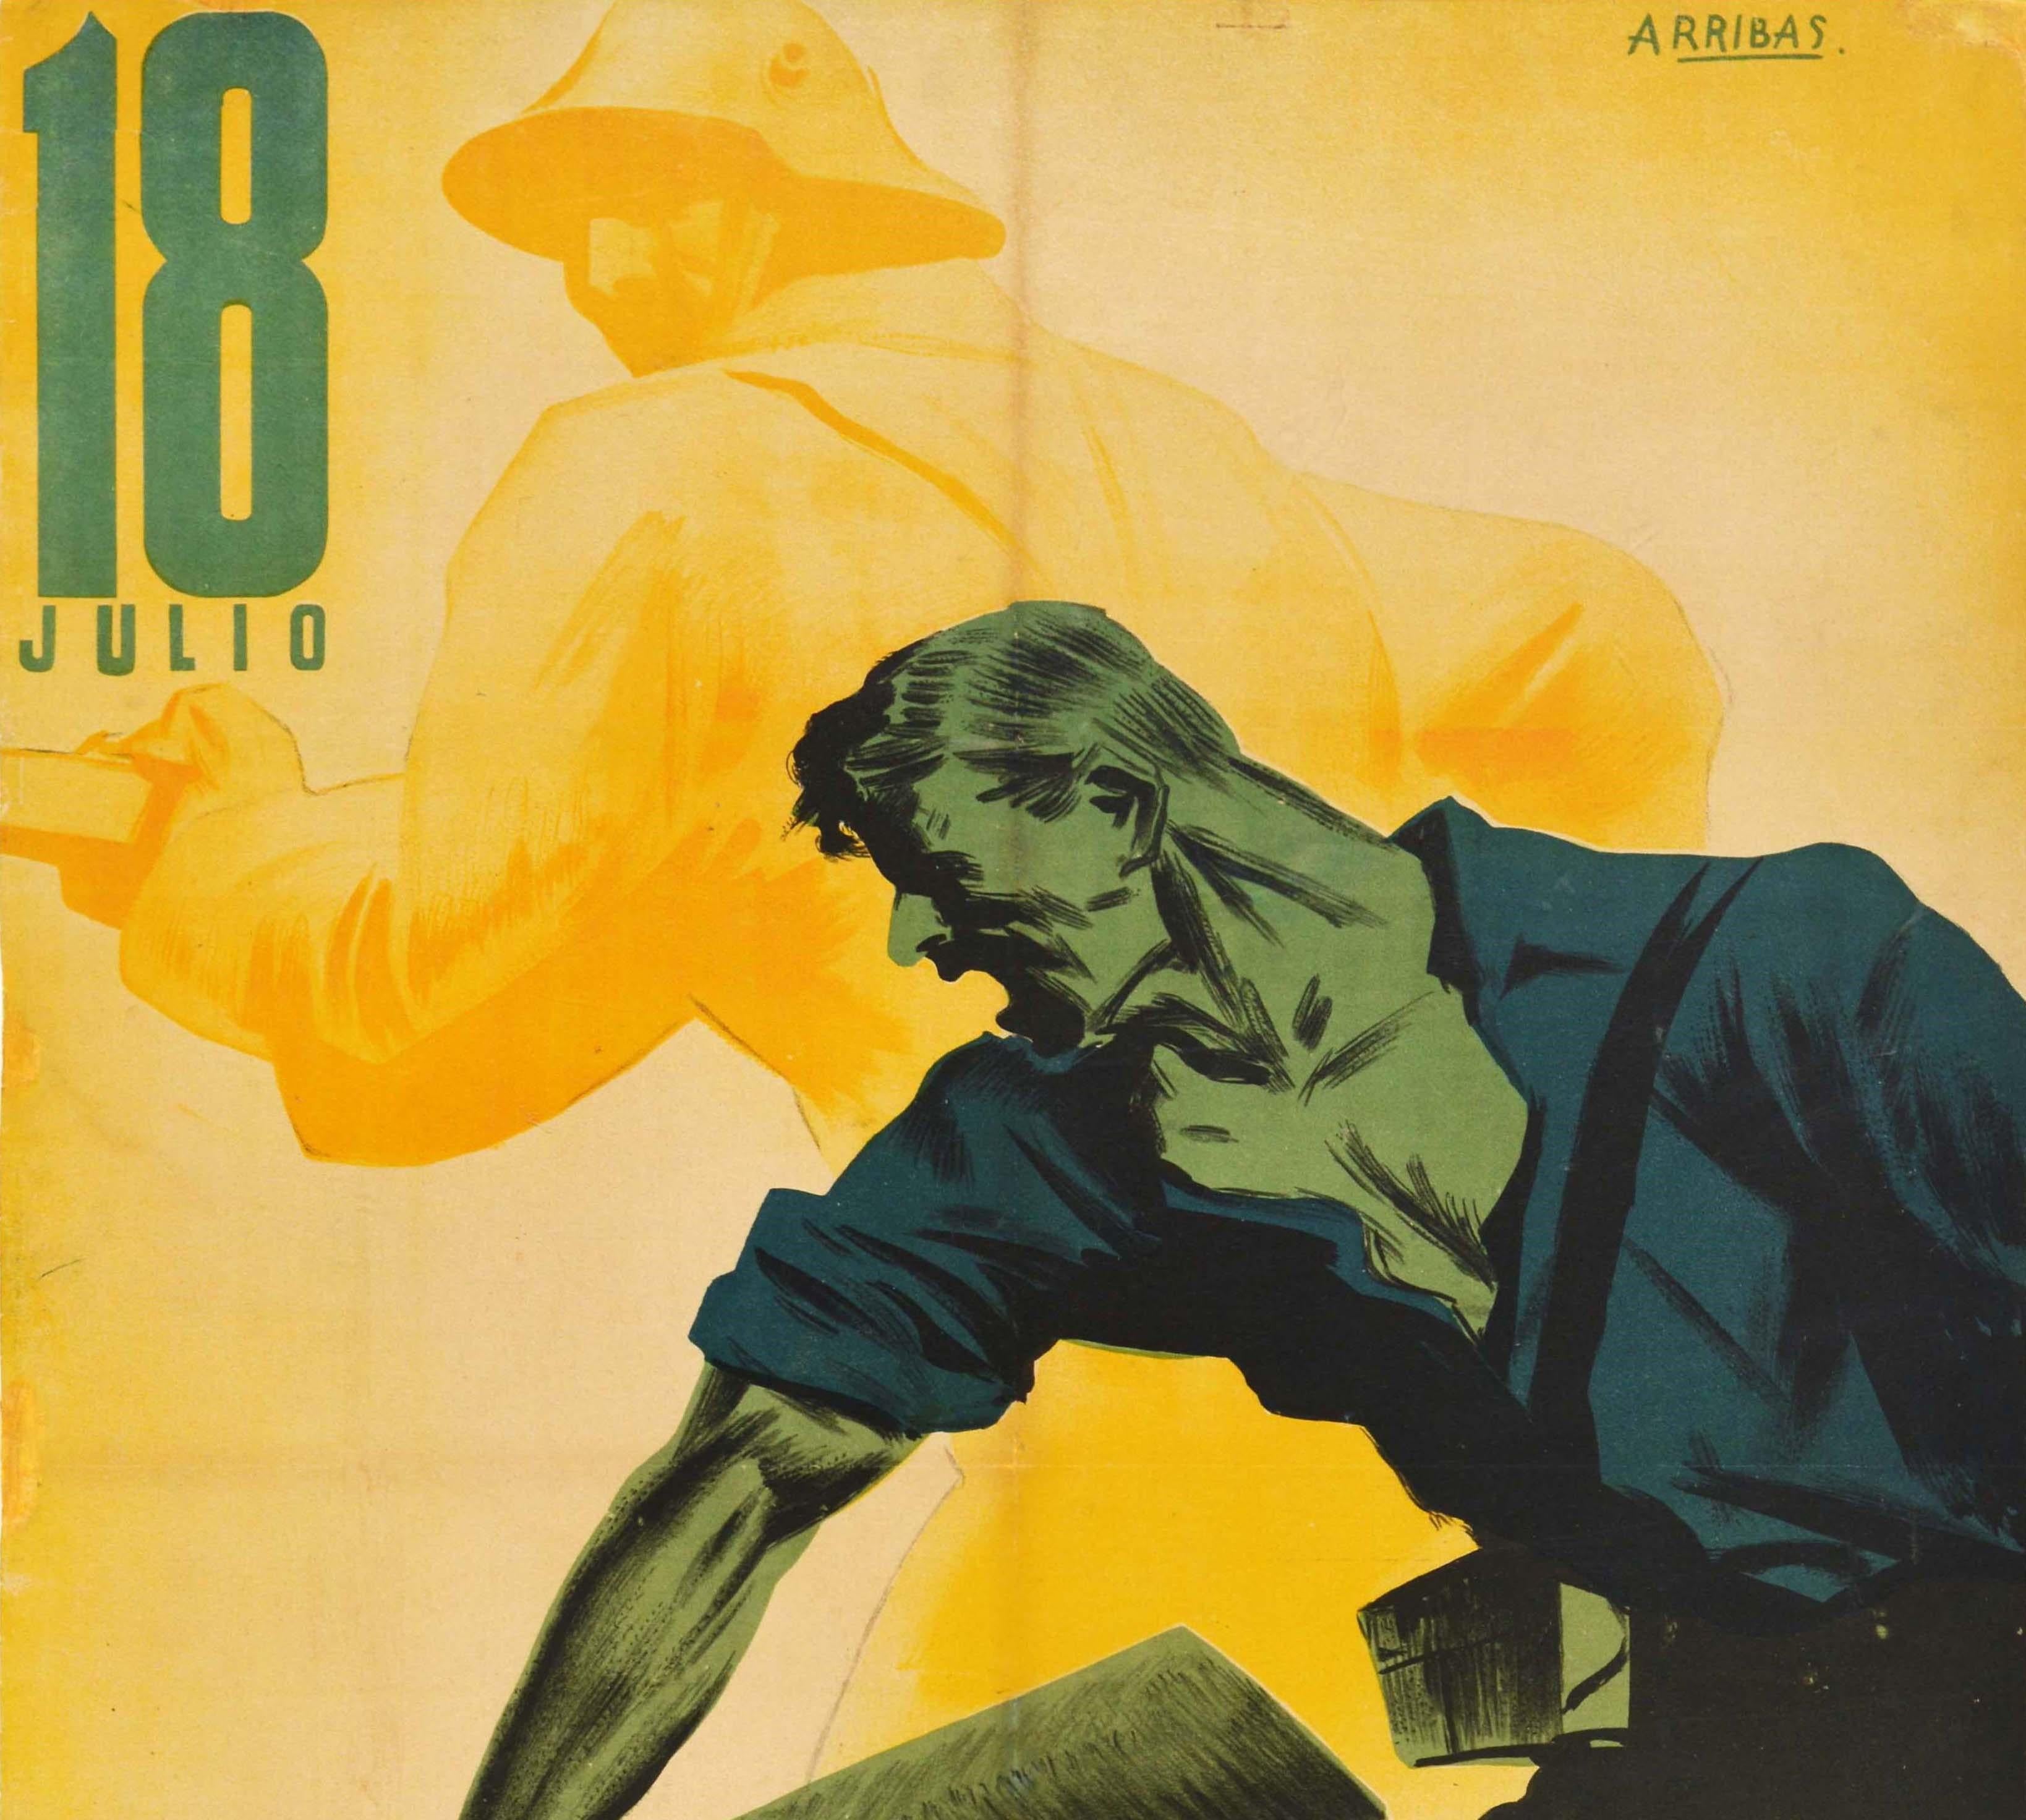 Originales Propagandaplakat für den Spanischen Bürgerkrieg - 18 Julio 1936 1937 - zum Gedenken an den Jahrestag des spanischen Staatsstreichs von 1936 / Golpe de Estado de Espana de julio de 1936 und den Beginn des Spanischen Bürgerkriegs